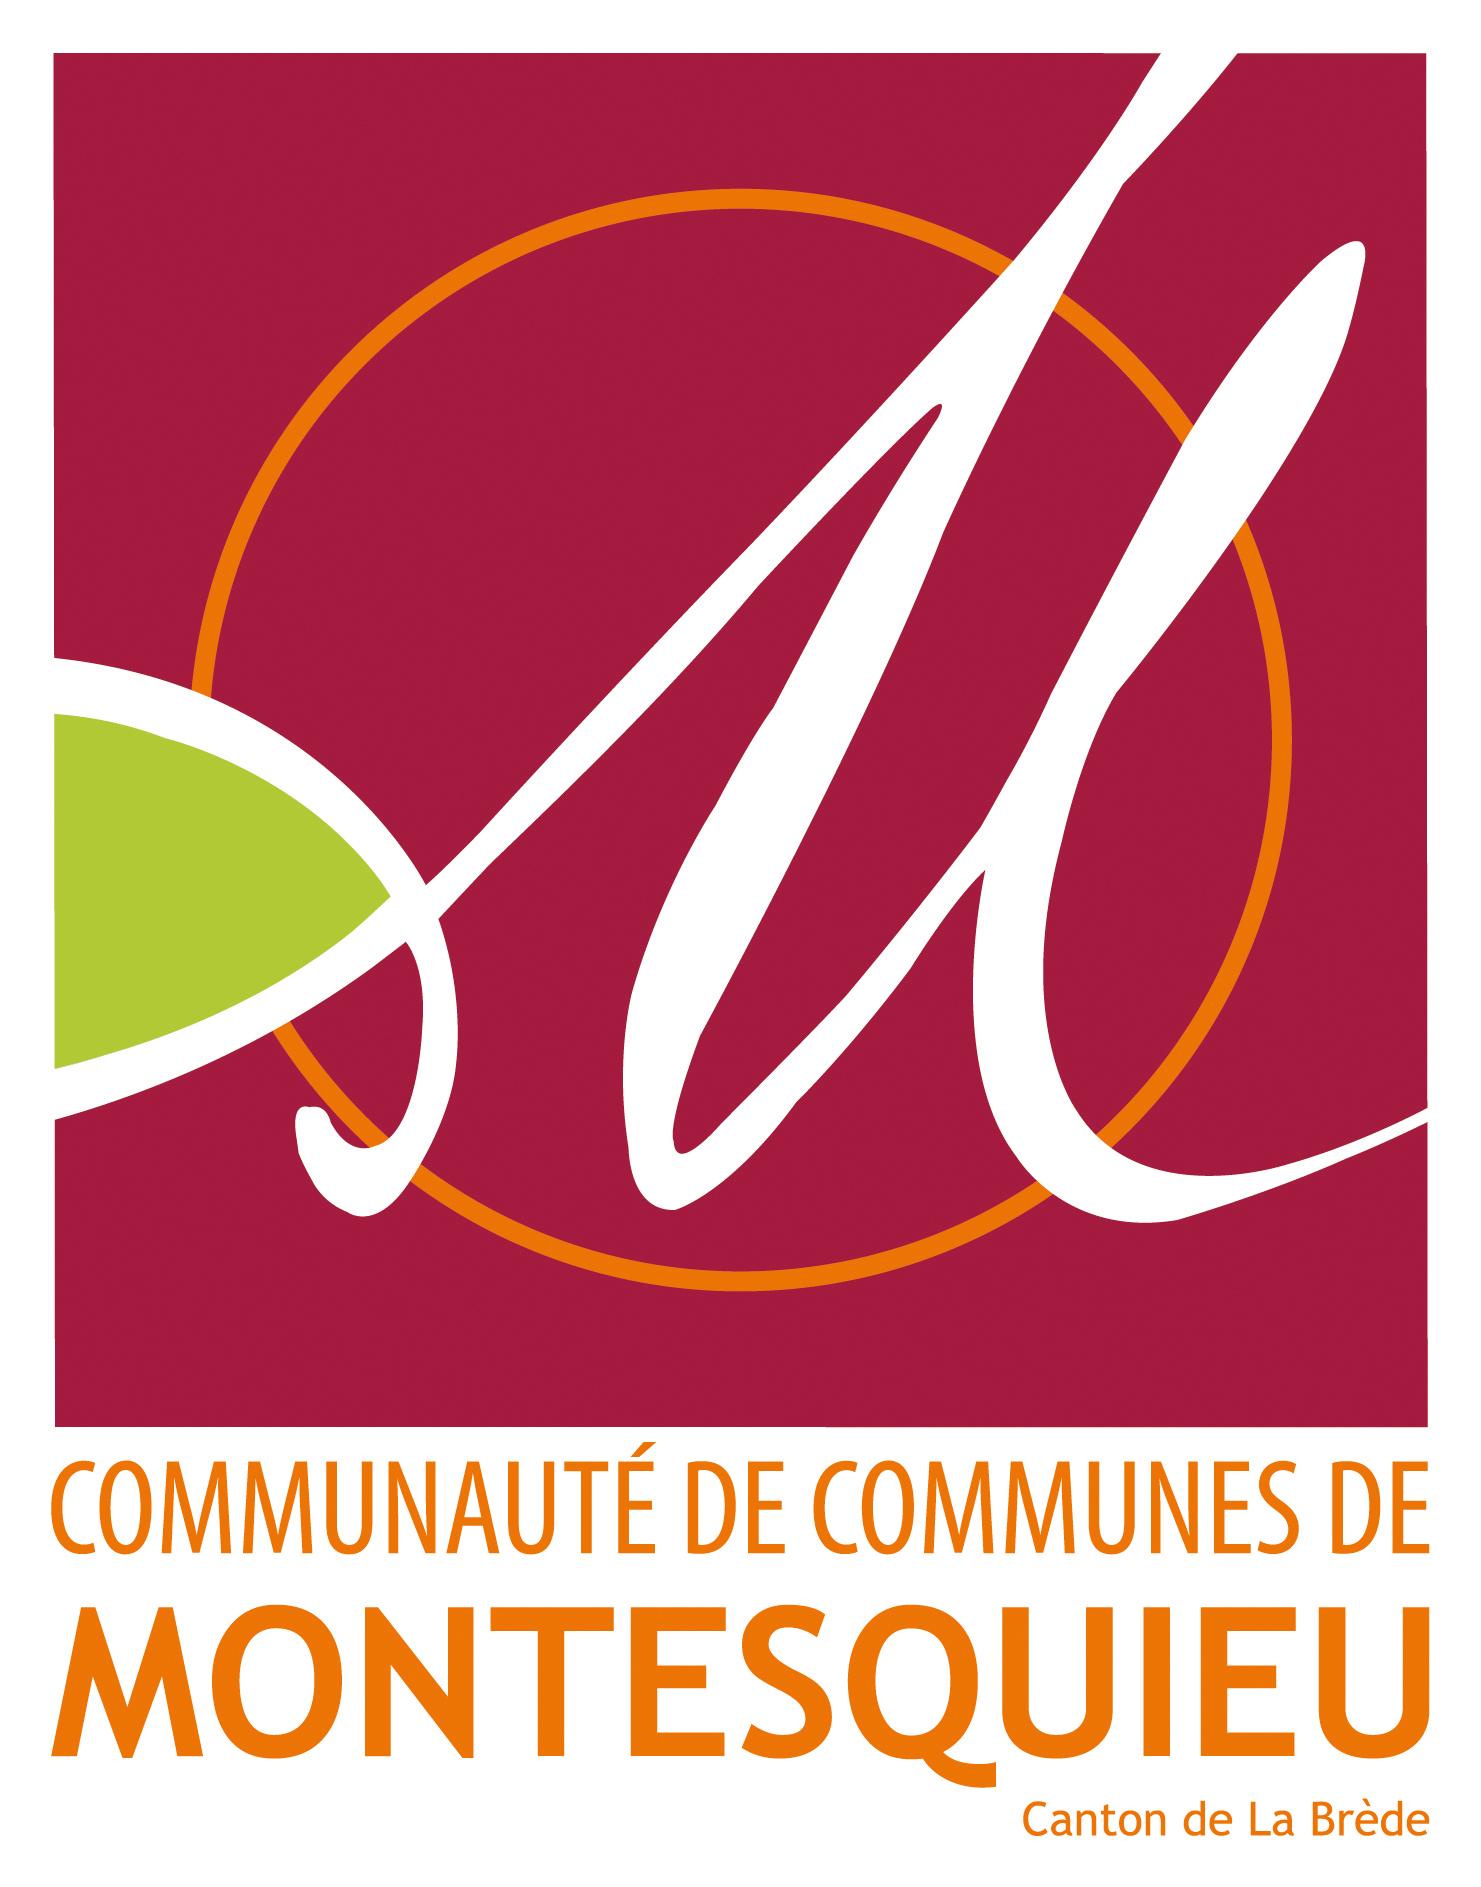 LAGADOUE - logo communes de montesquieu.jpg